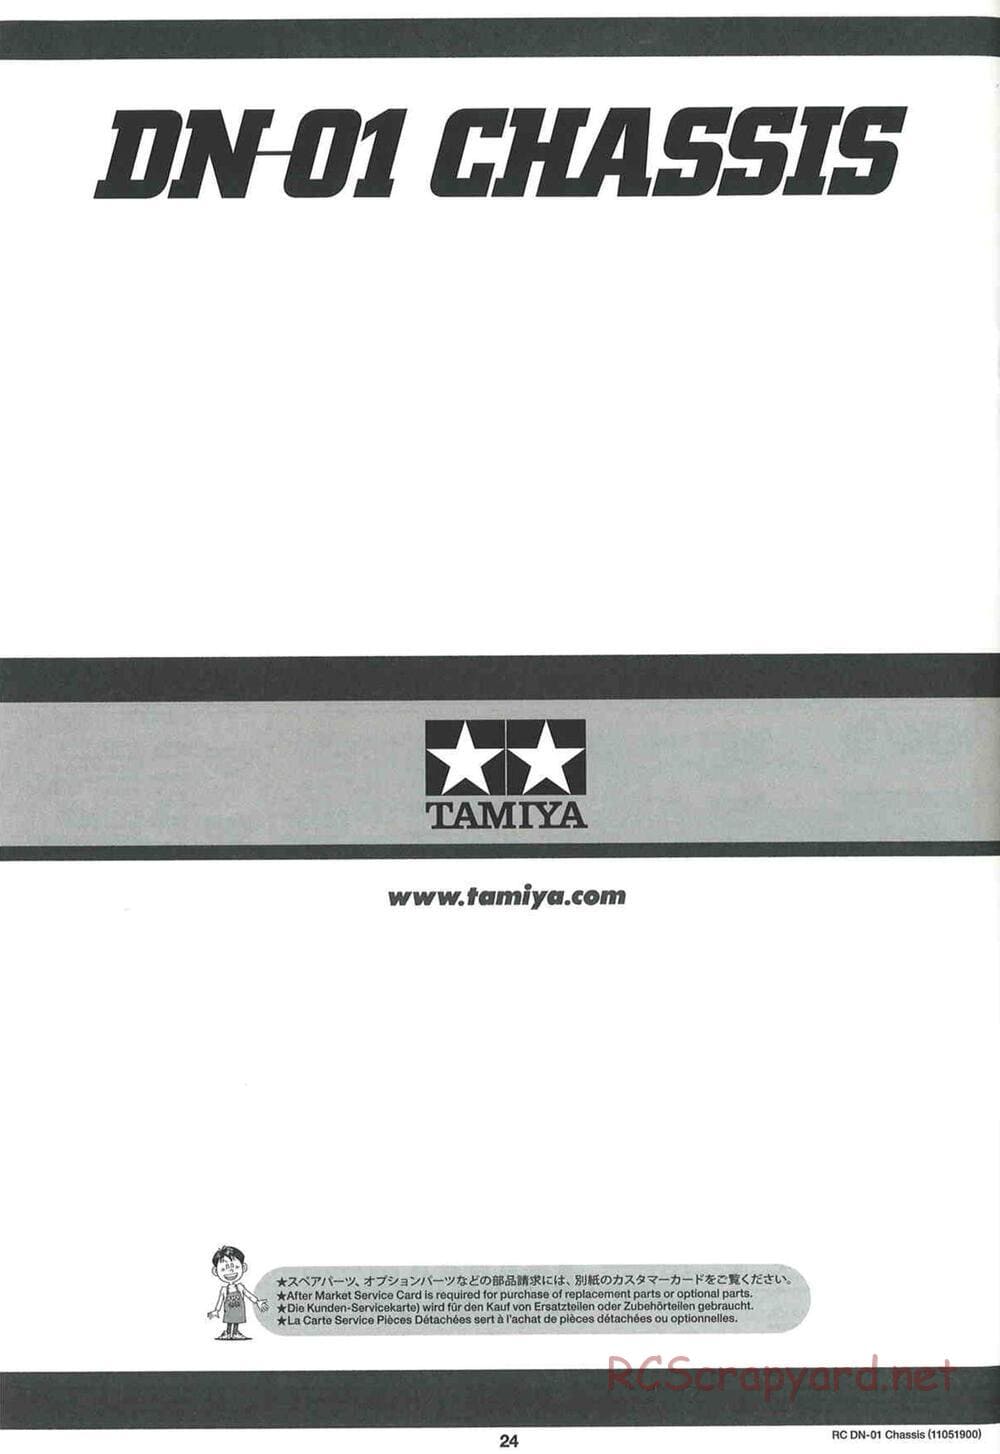 Tamiya - DN-01 Chassis - Manual - Page 24